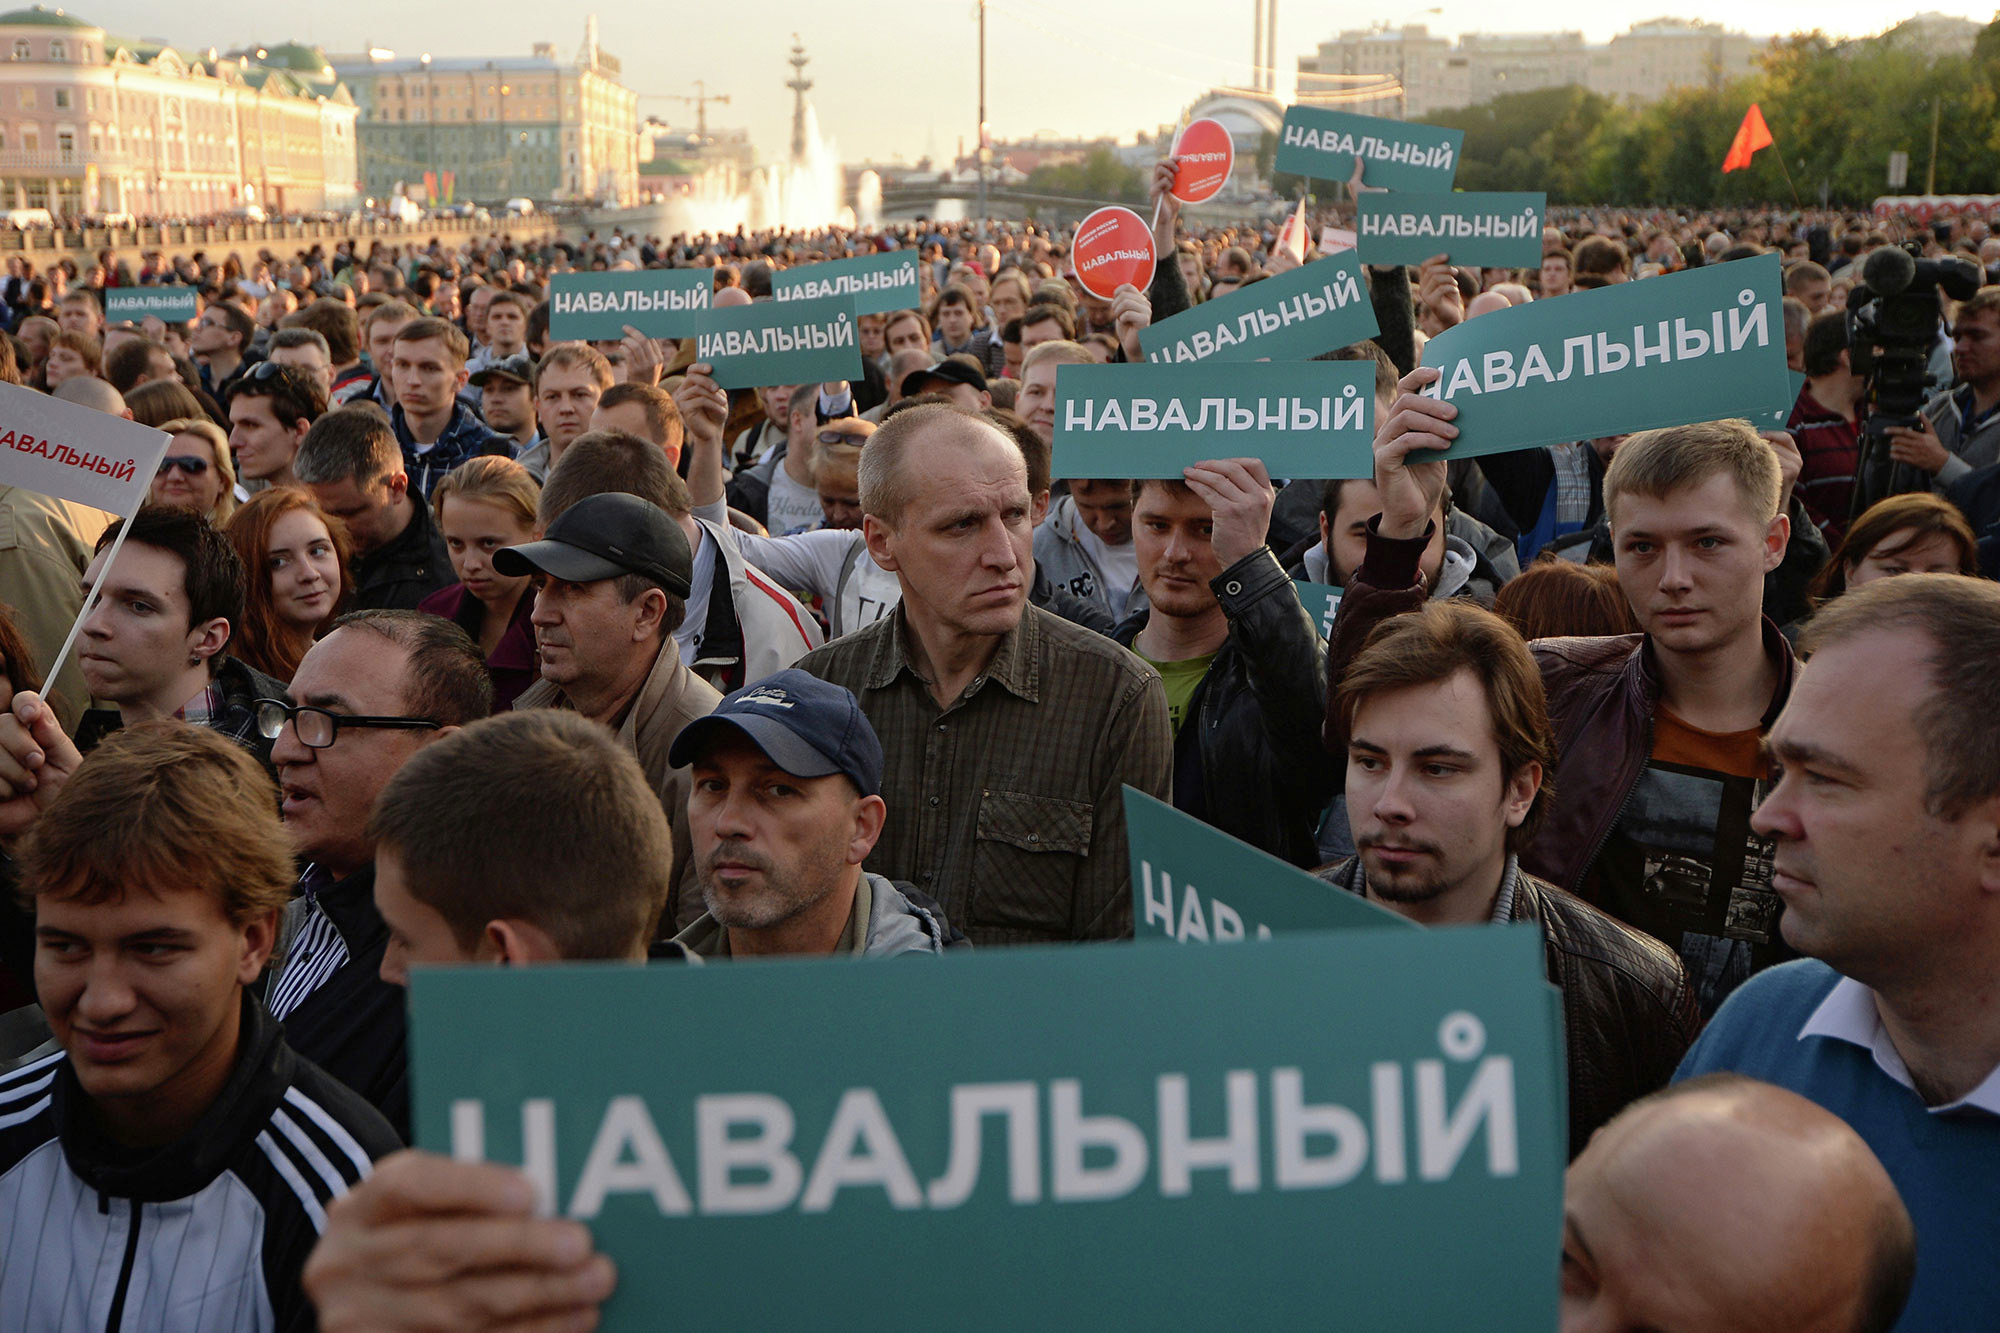 Политический приверженец. Навальный Болотная площадь. Сторонники Навального. Навальный на Болотной. Политическая оппозиция.